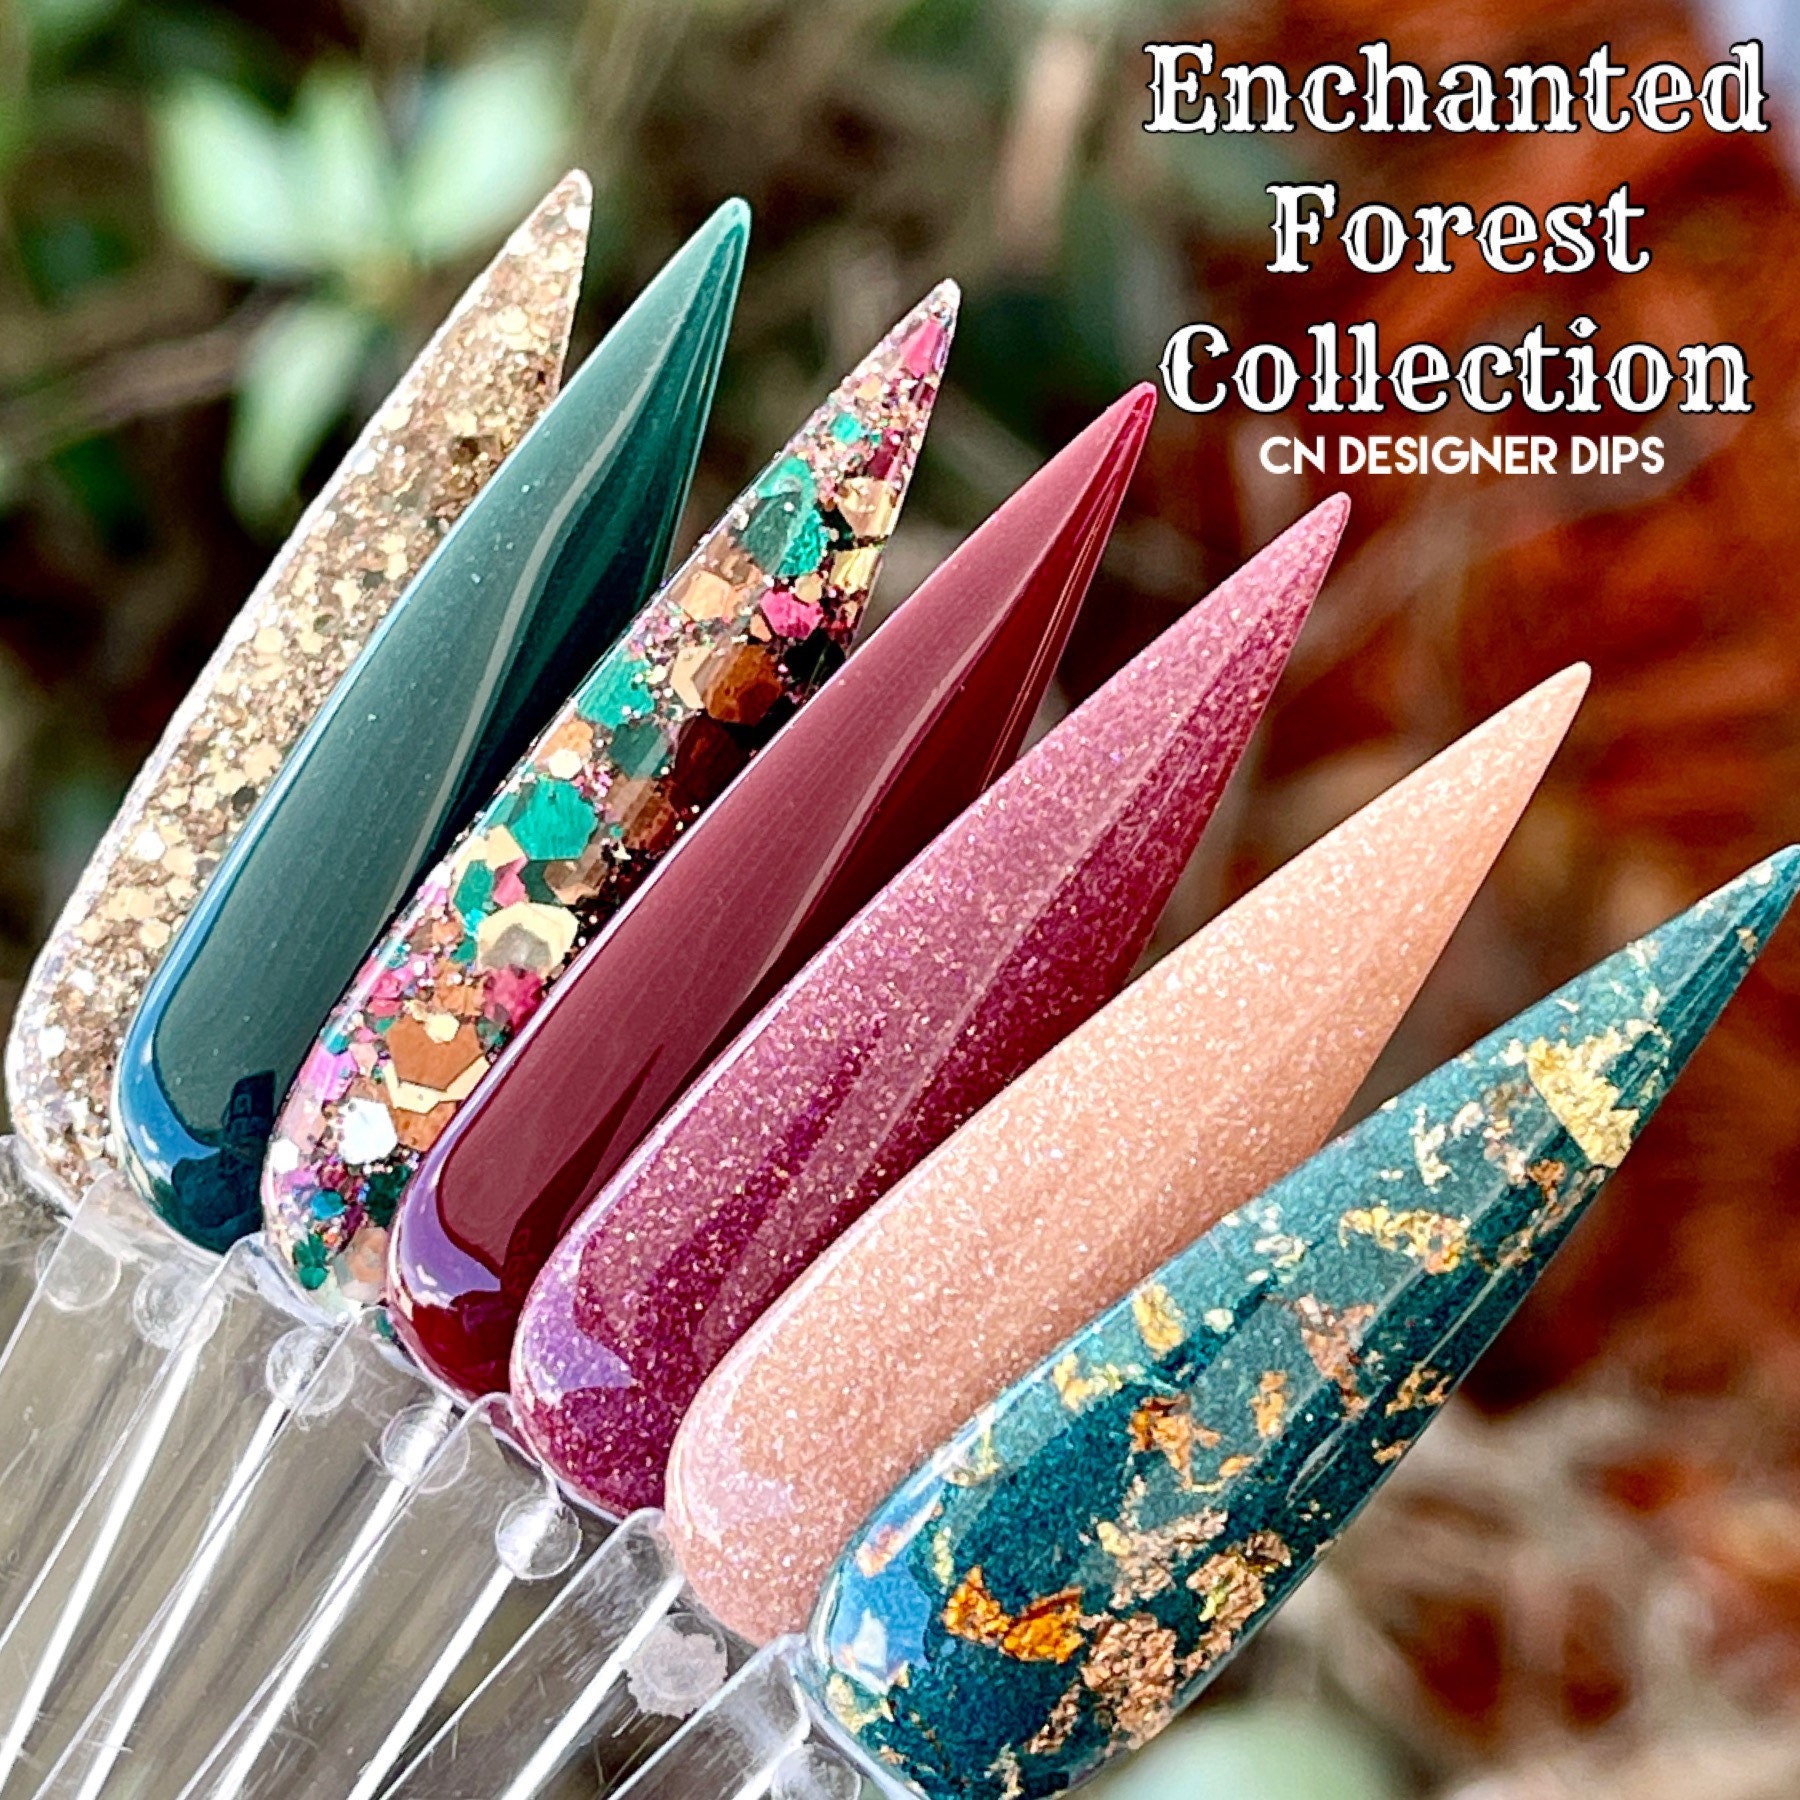 Enchanted Forest Collection - Dippulver, Dippulver Für Nägel, Nagel Dip, Dip Nailpulver, Glitzer Acryl von Etsy - CNDesignerDips